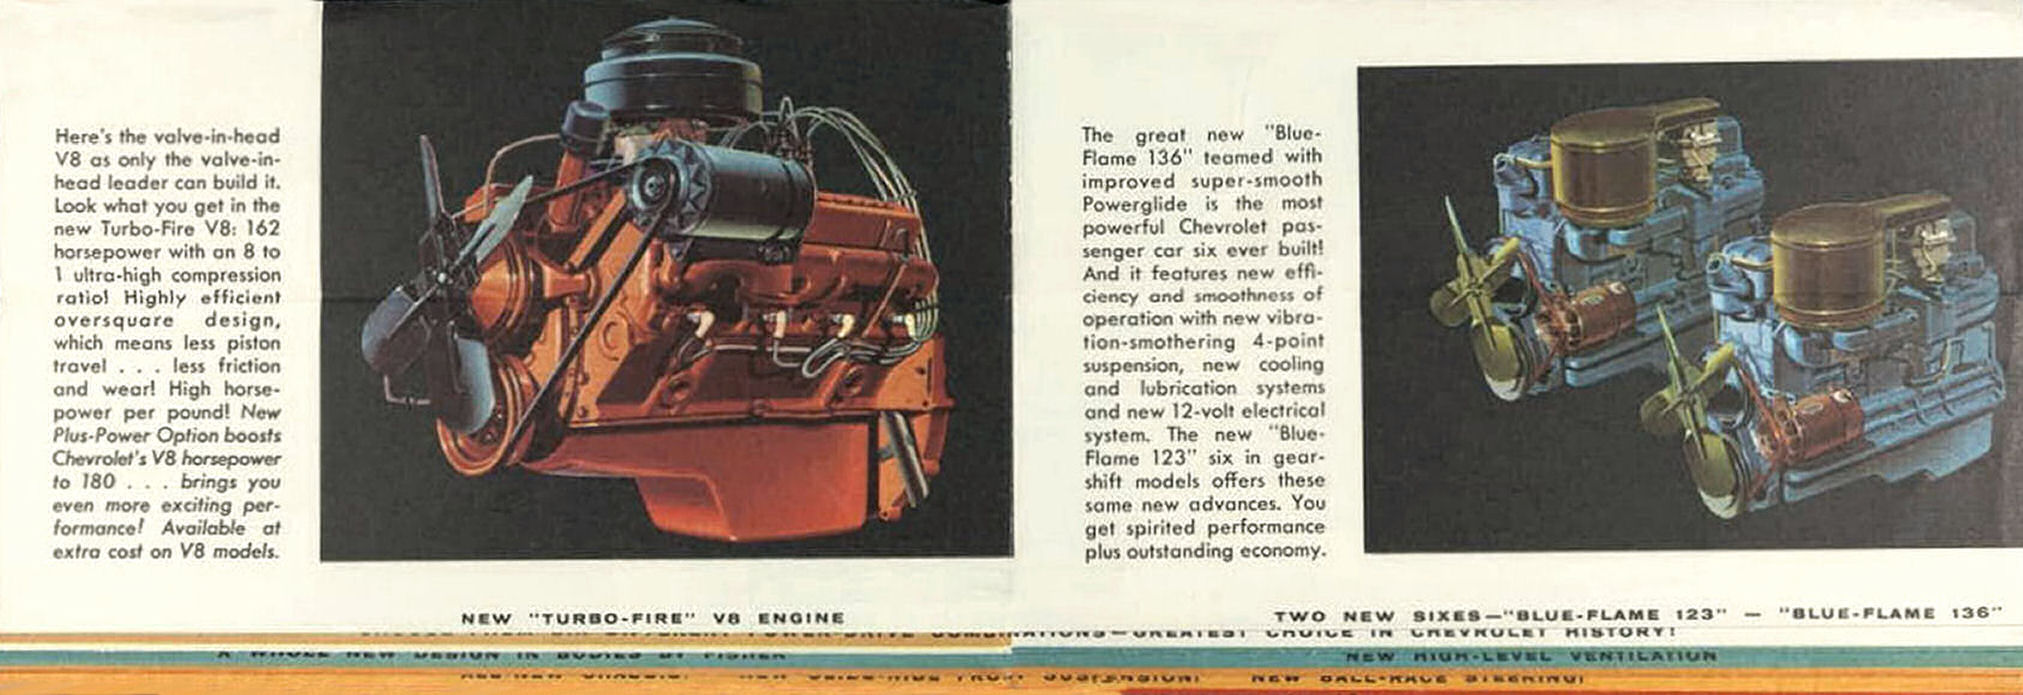 1955_Chevrolet_Whats_New_Folder-06